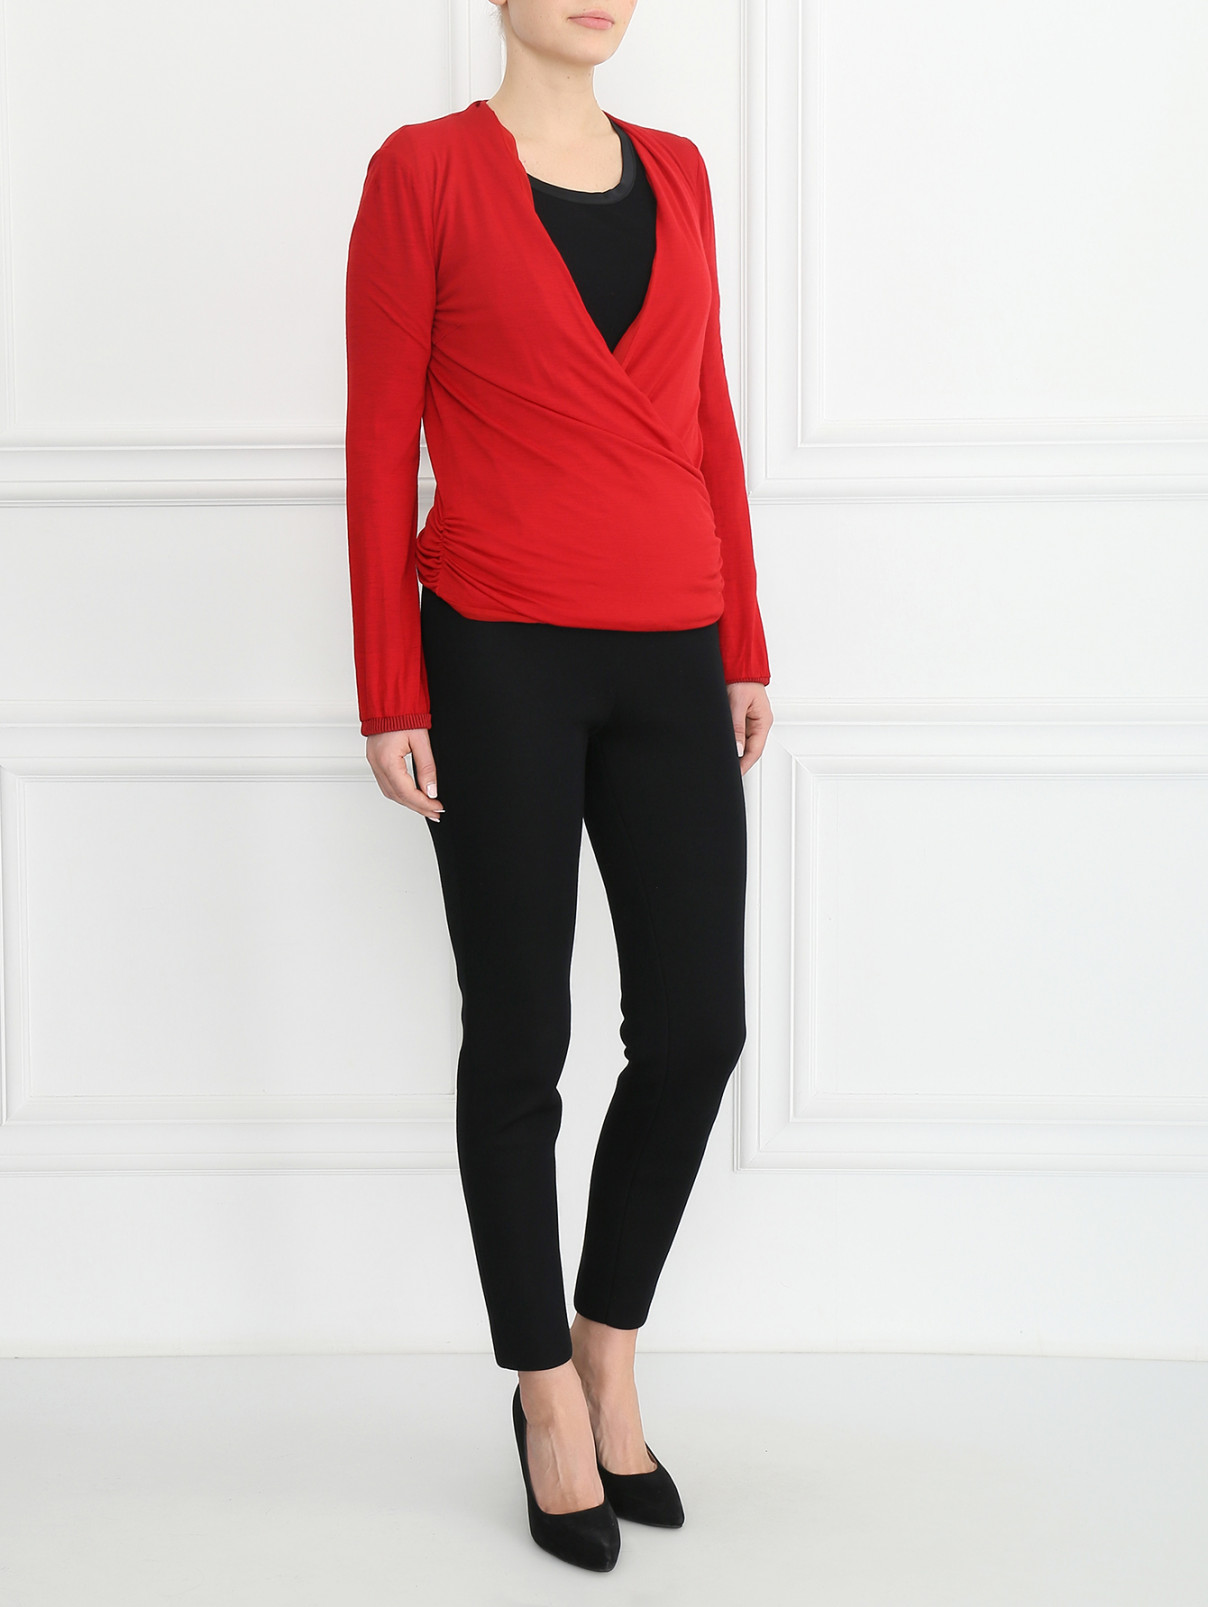 Блуза ассиметричного кроя Costume National  –  Модель Общий вид  – Цвет:  Красный